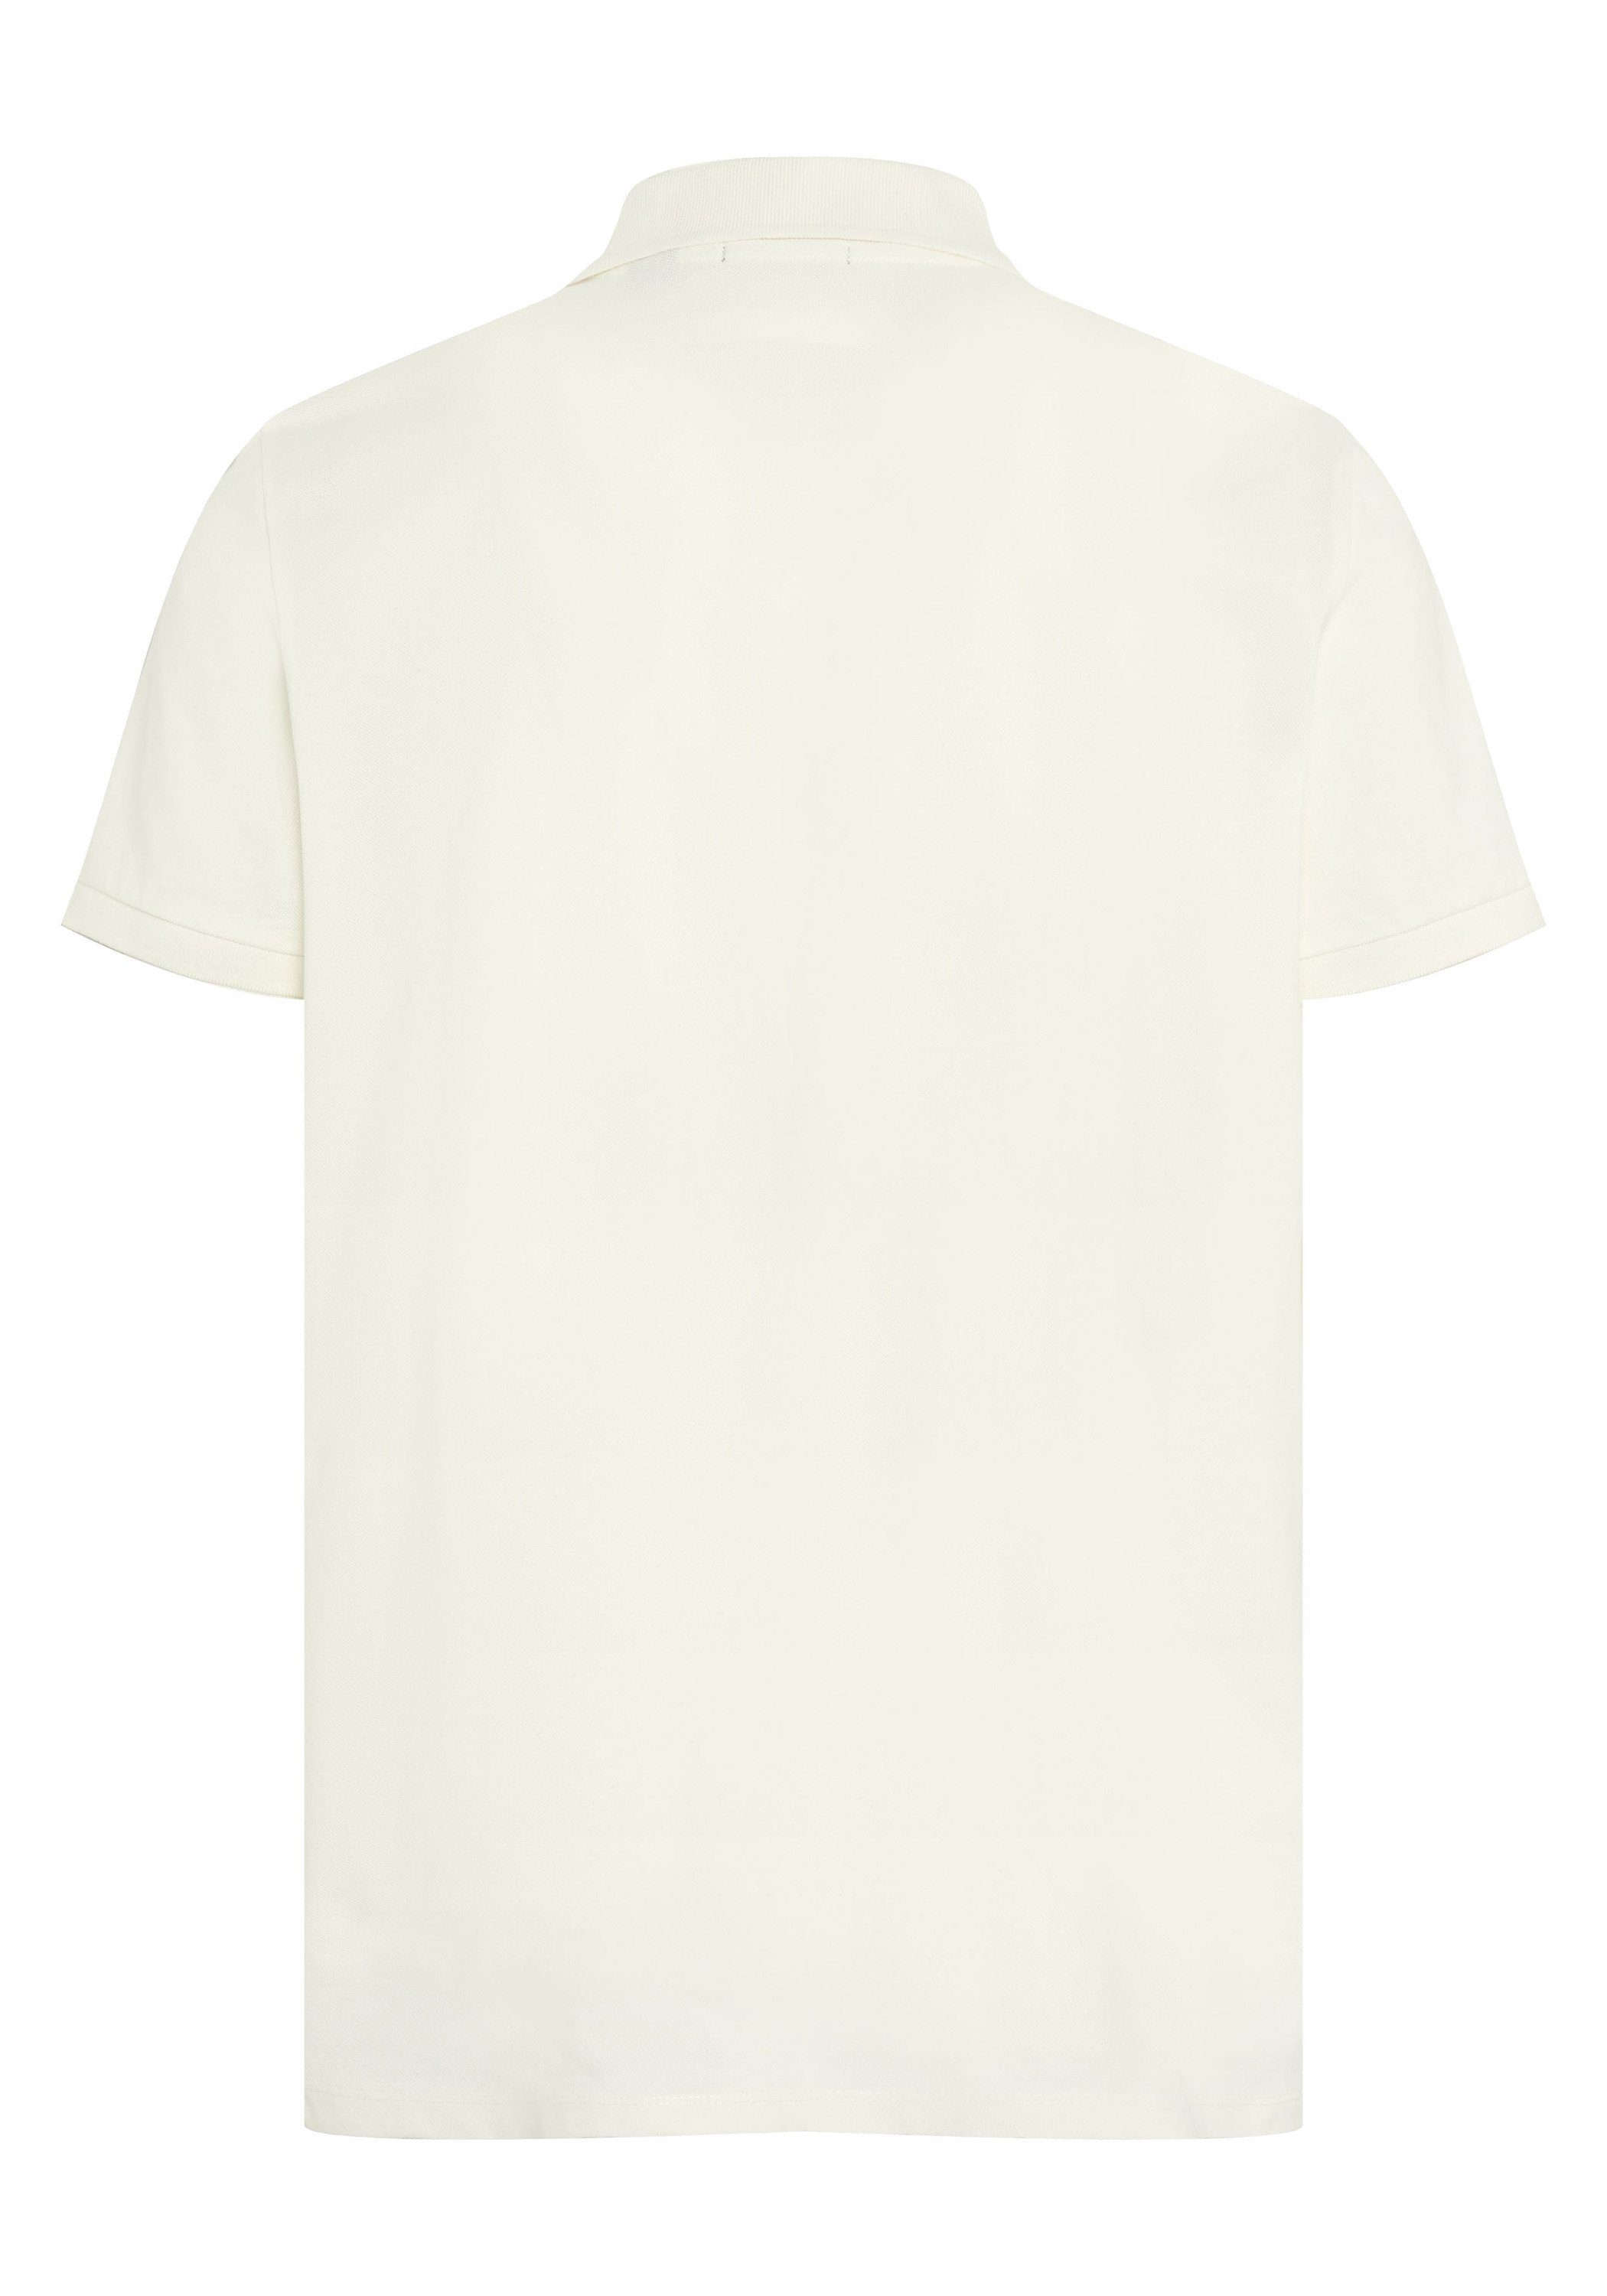 11-4202 in Two-Tone-Optik Piqué 1 White Poloshirt Star Poloshirt Chiemsee aus